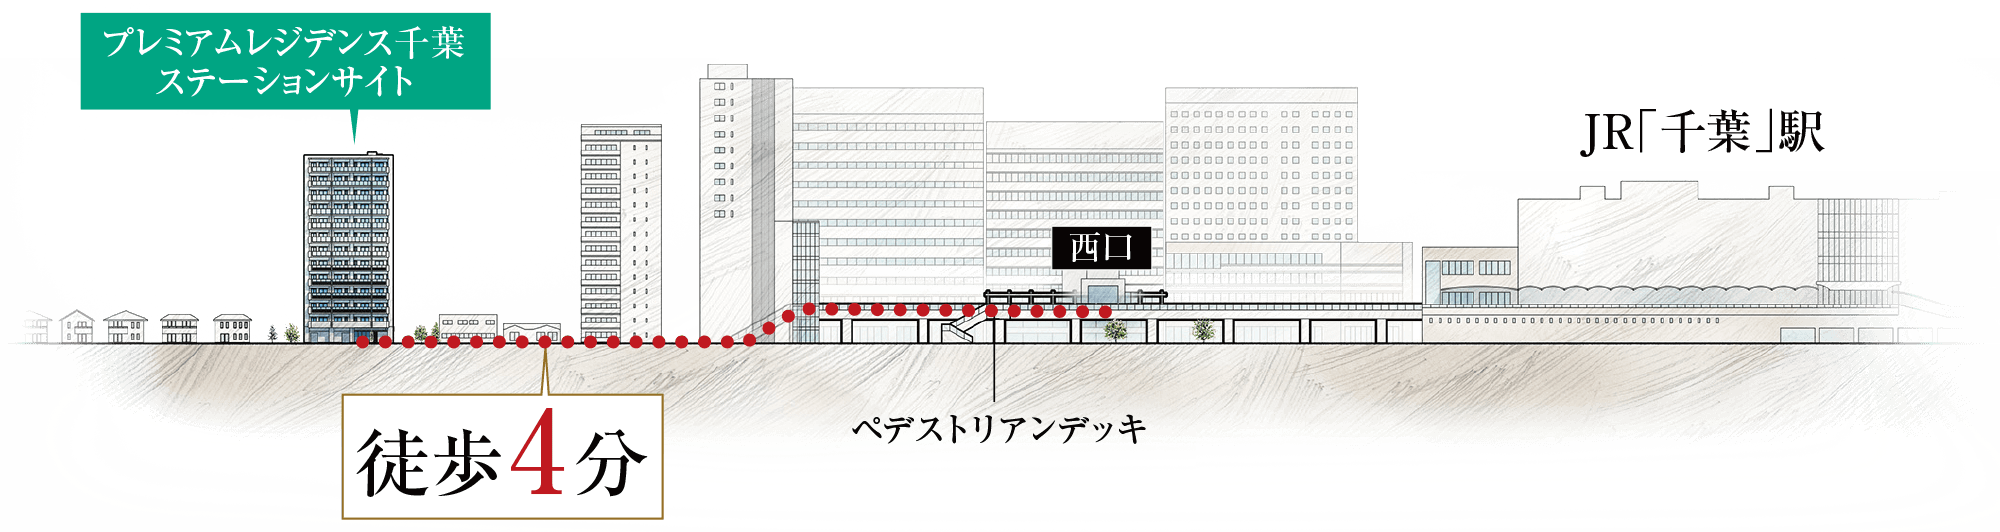 千葉駅西口徒歩ルート断面概念イラスト